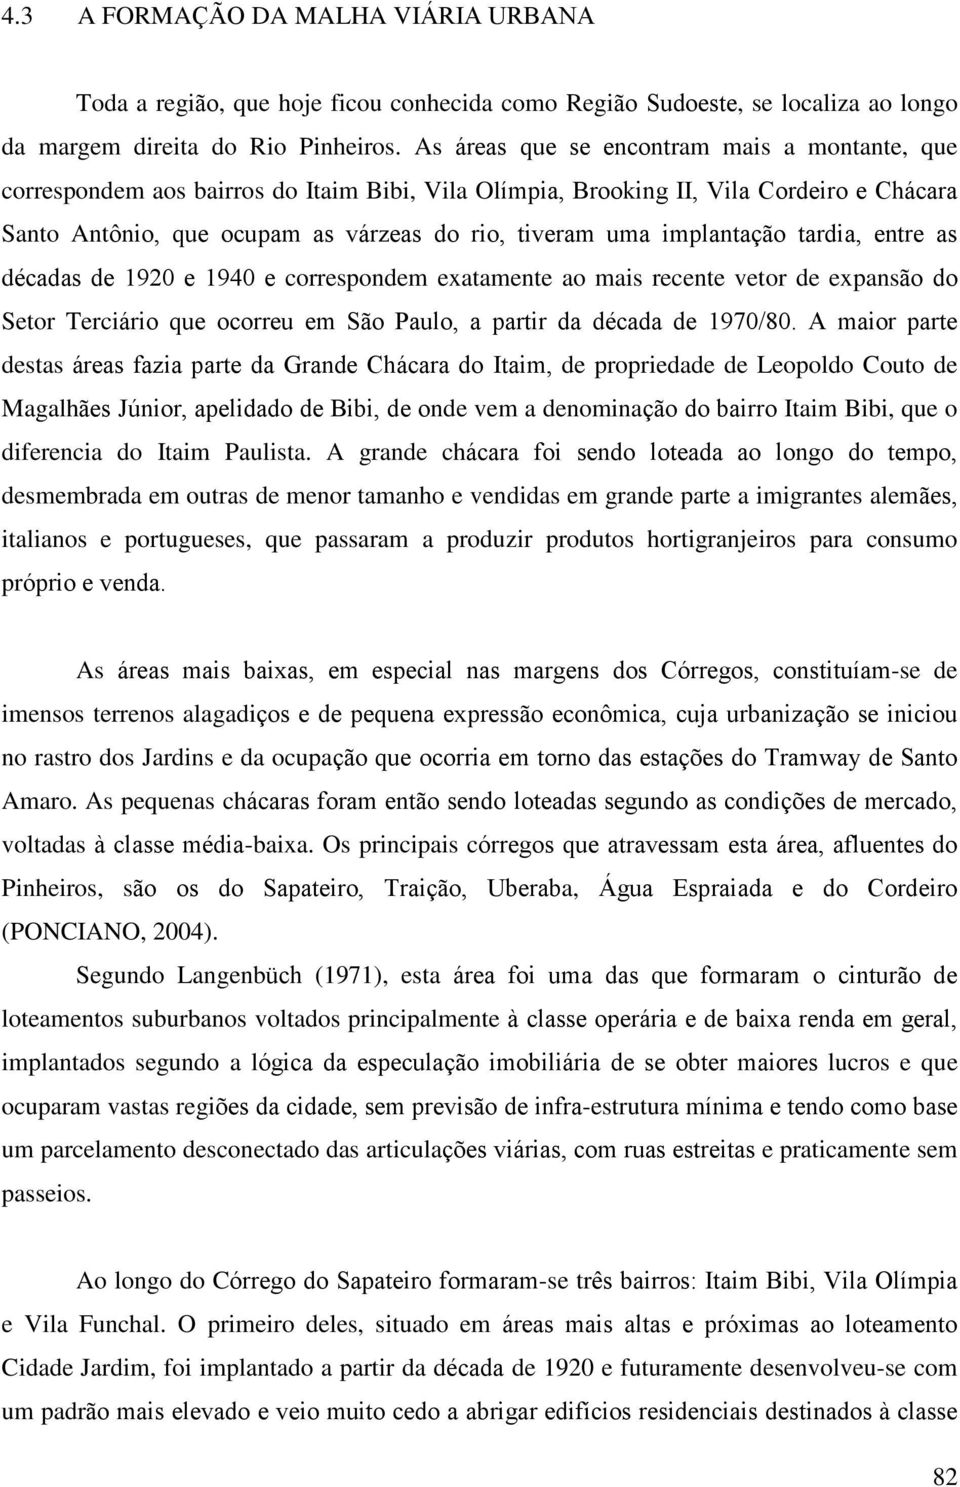 implantação tardia, entre as décadas de 1920 e 1940 e correspondem exatamente ao mais recente vetor de expansão do Setor Terciário que ocorreu em São Paulo, a partir da década de 1970/80.